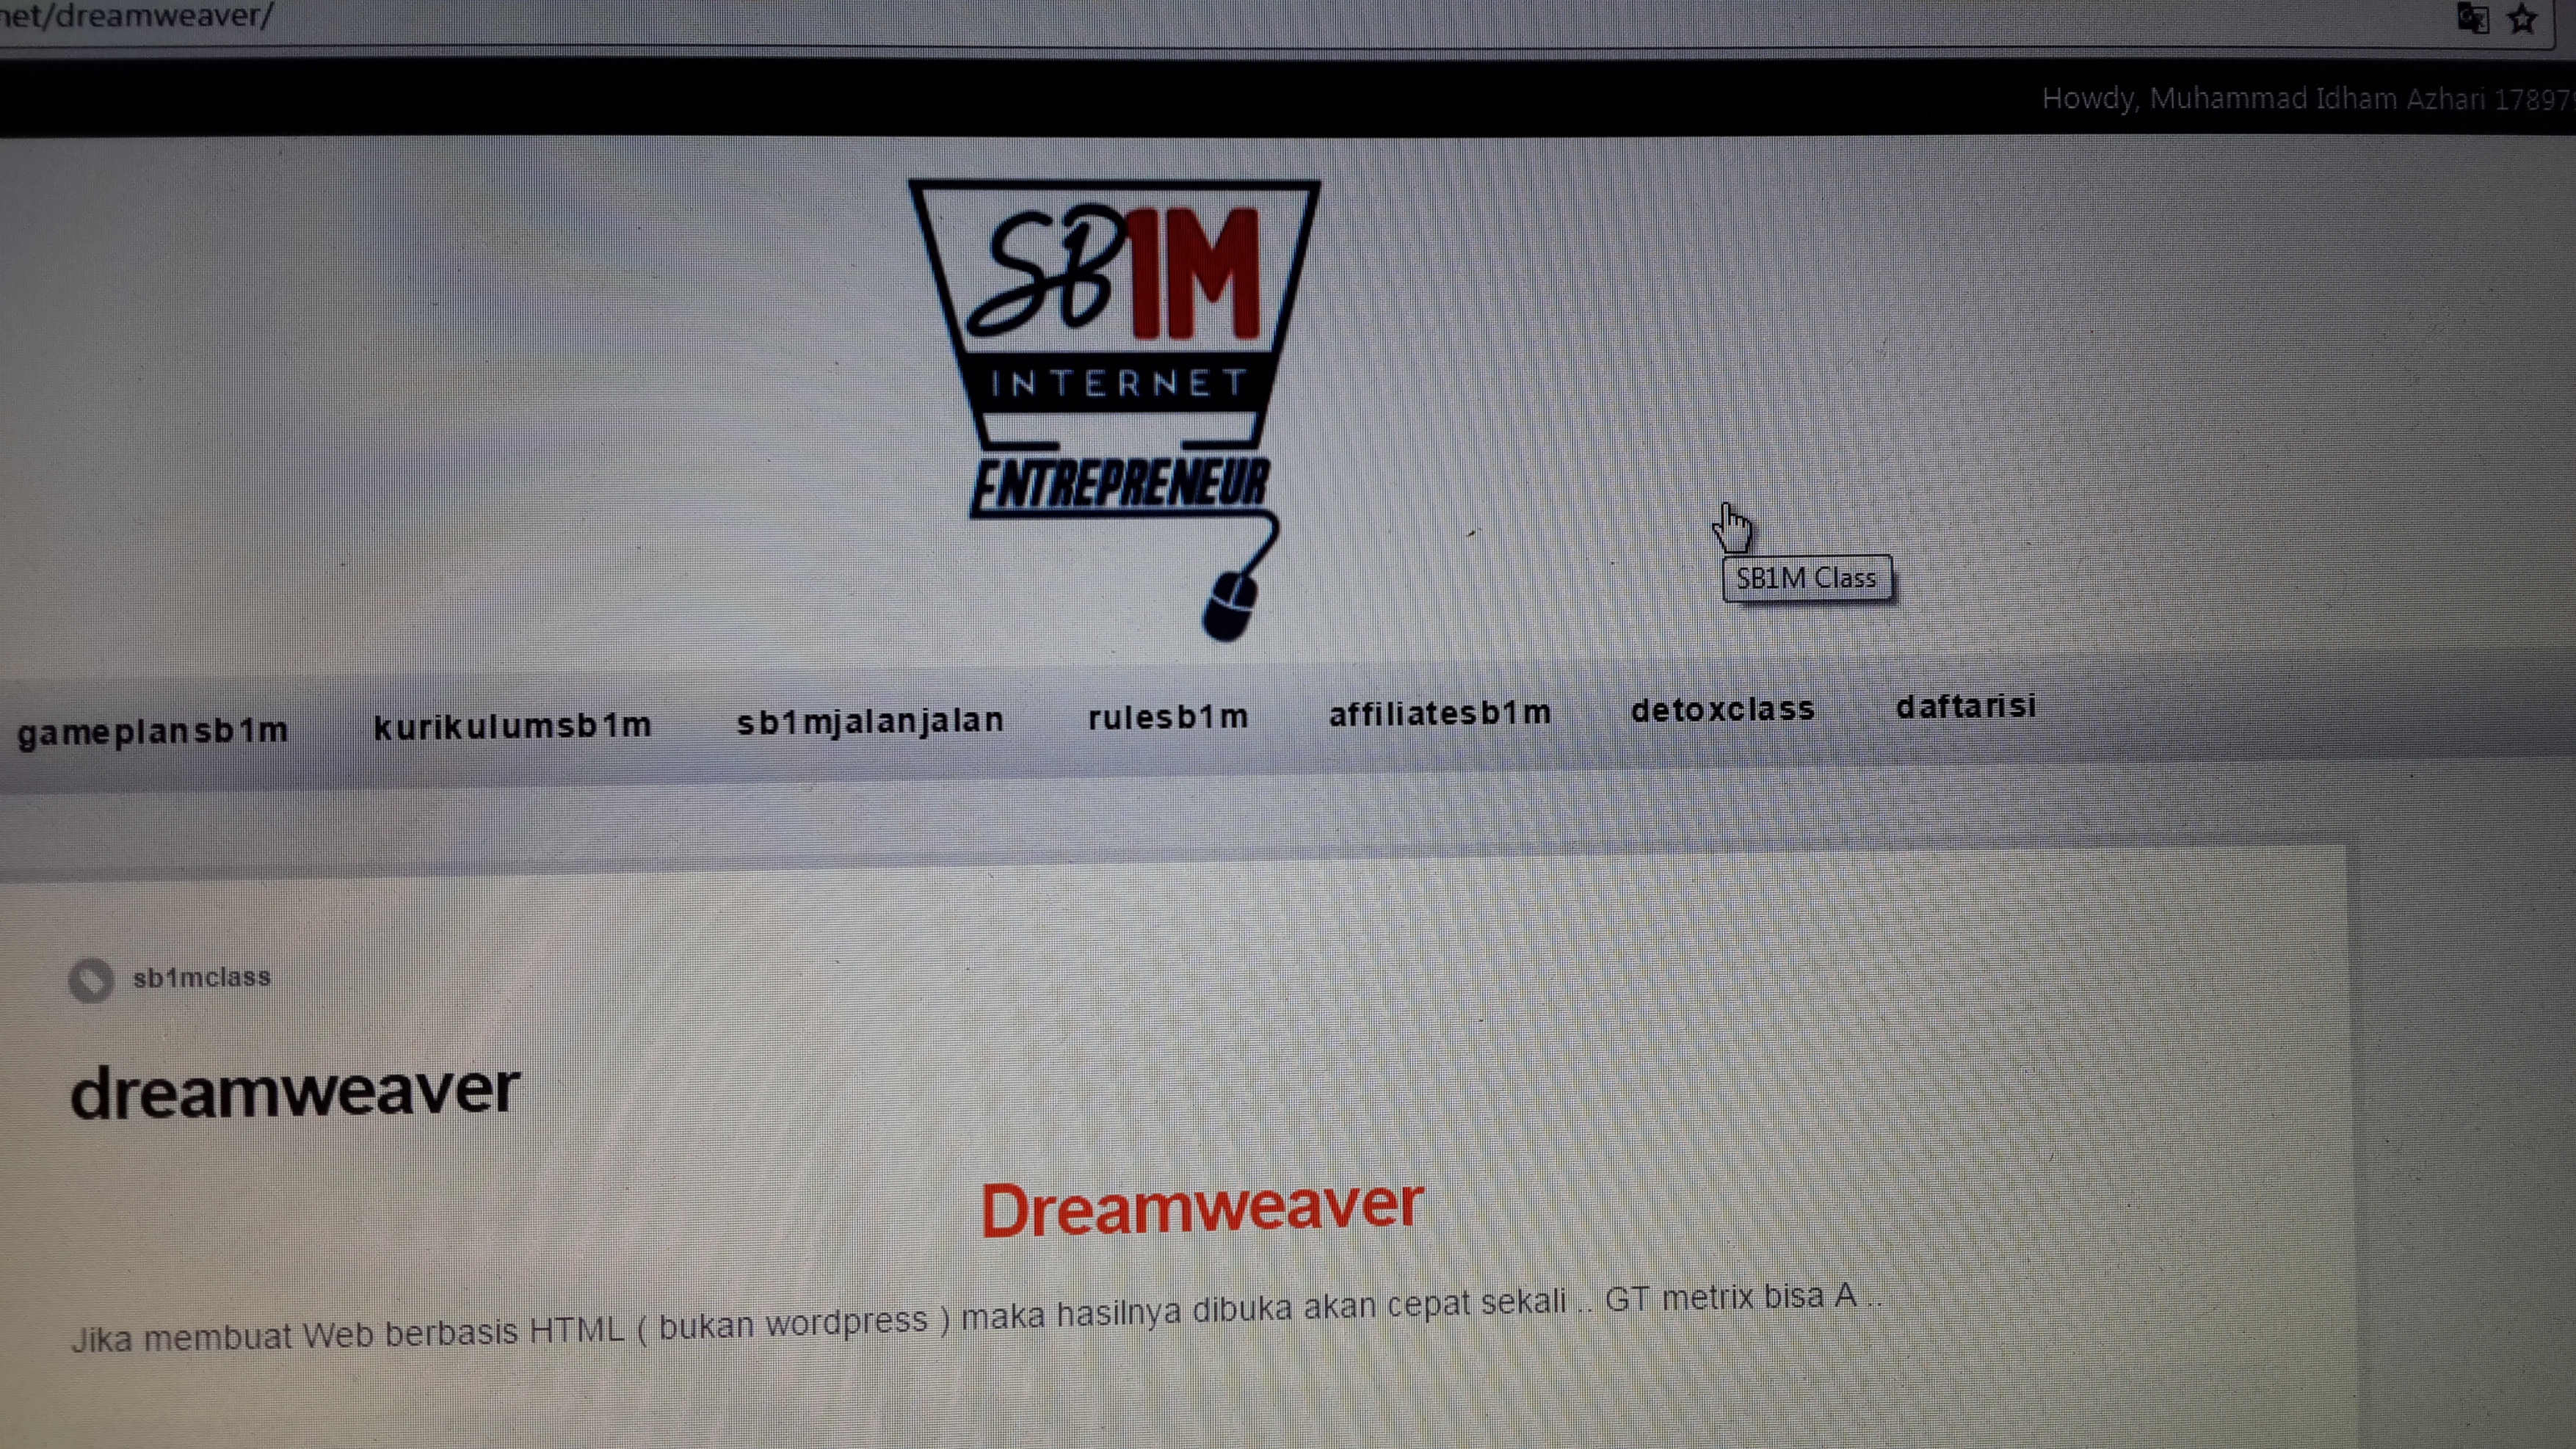 materi-pelatihan-bisnis-online-sb1m-dreamweaver